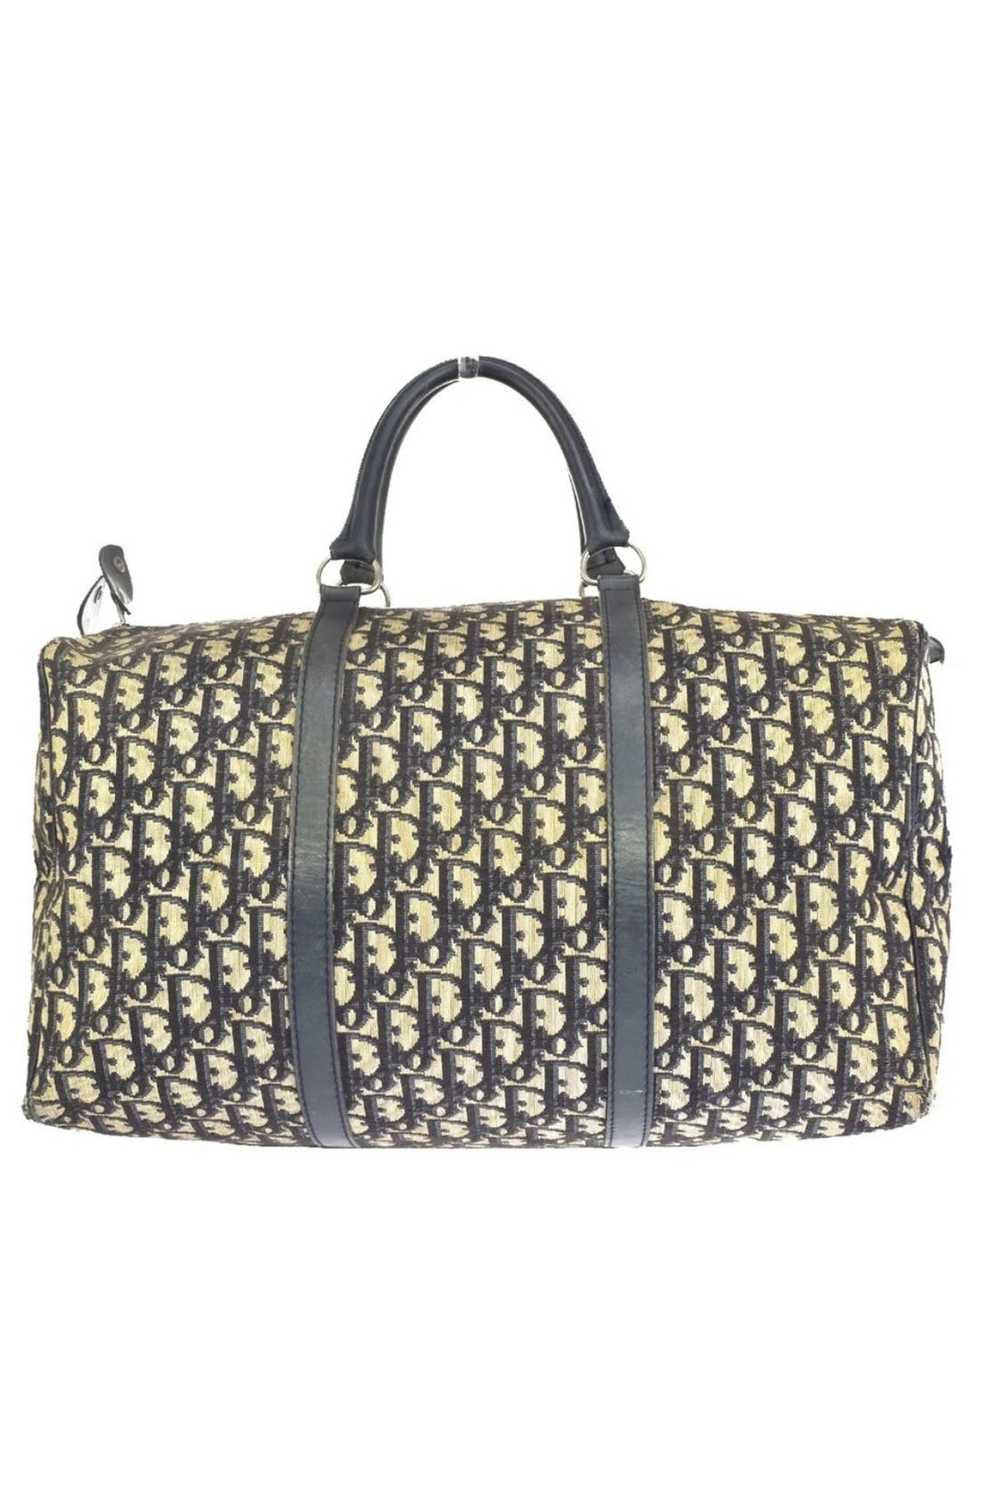 Dior Monogram Duffle Bag - image 1